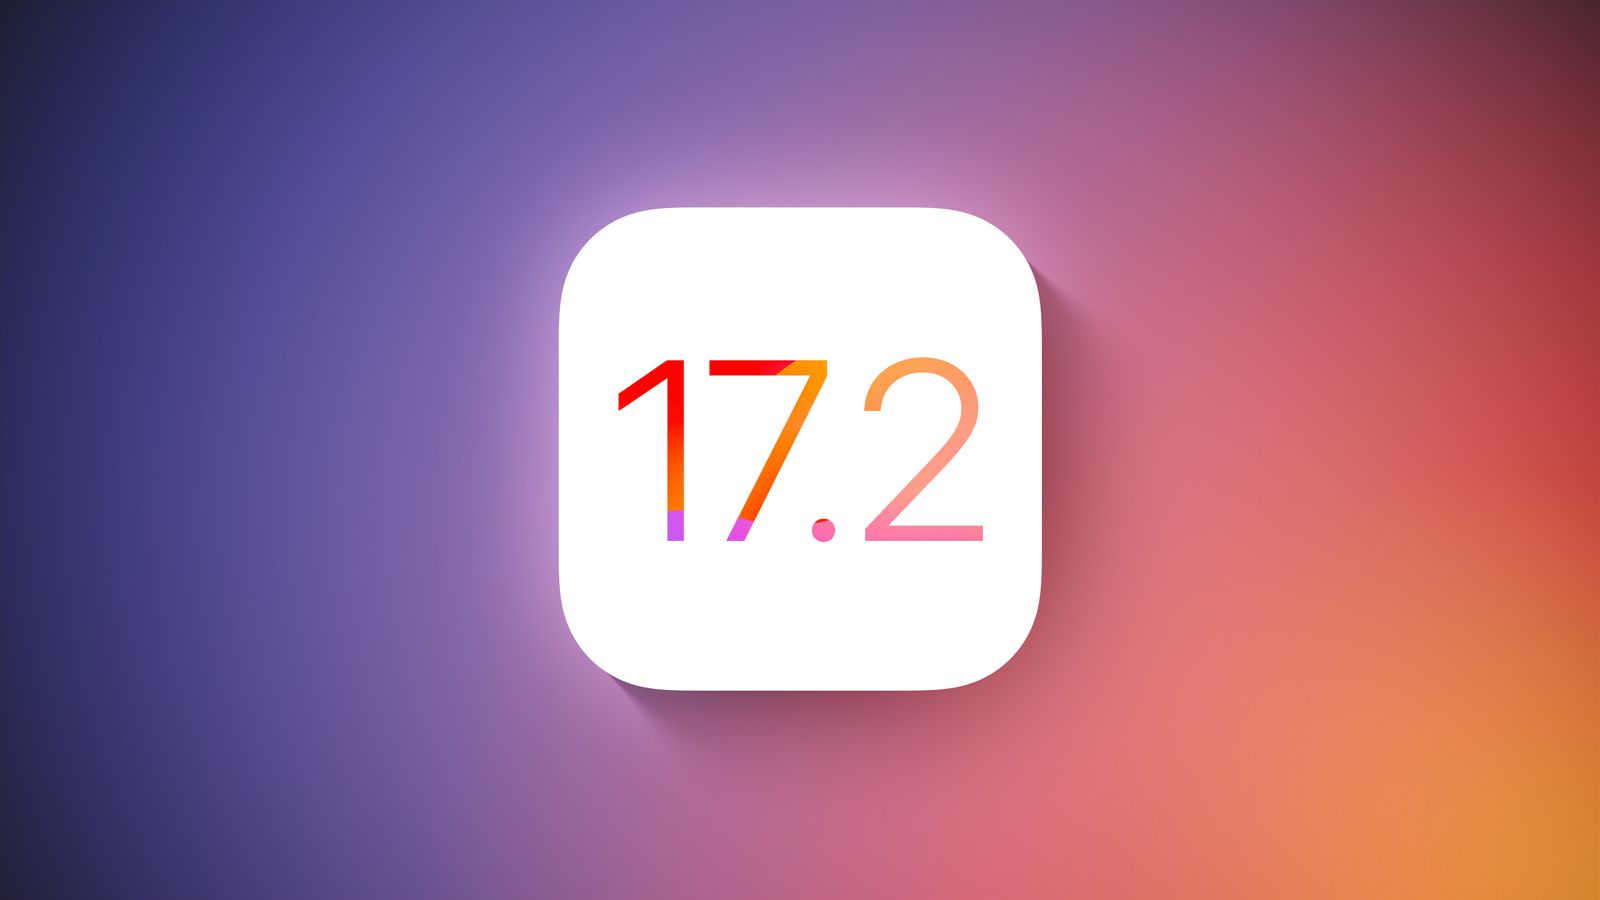 Apple ha rilasciato la versione stabile di iOS 17.2 con l'app Journal e altre novità.